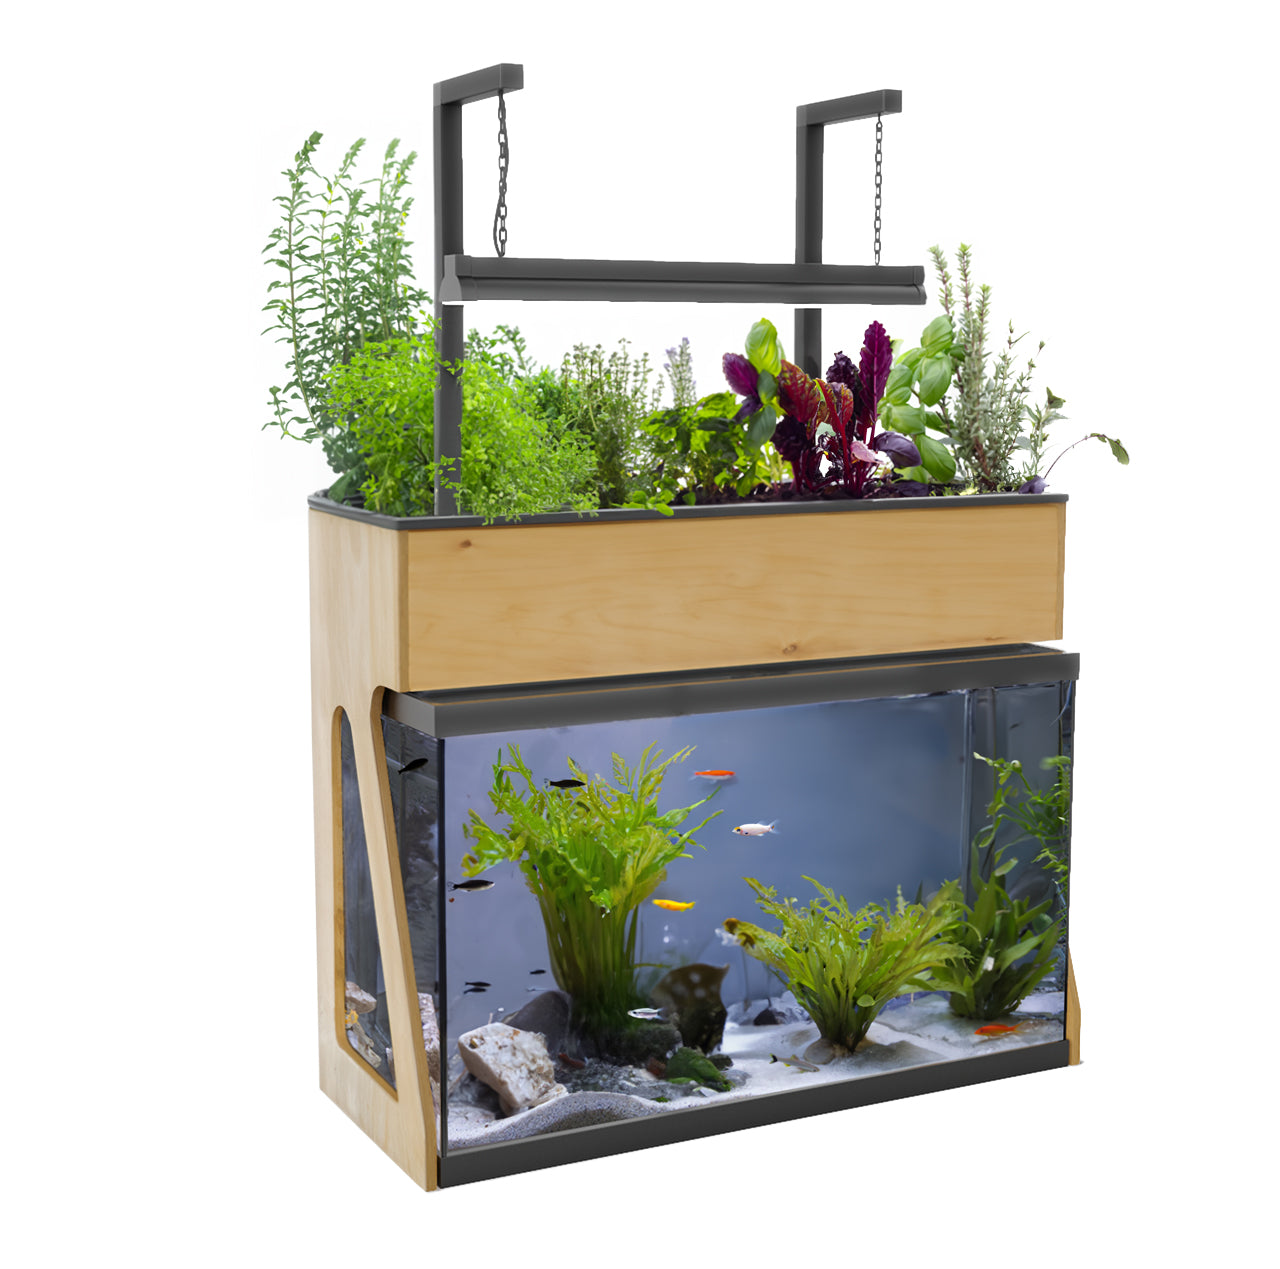 Kit de filtration naturelle - aquaponie pour aquarium 10 L